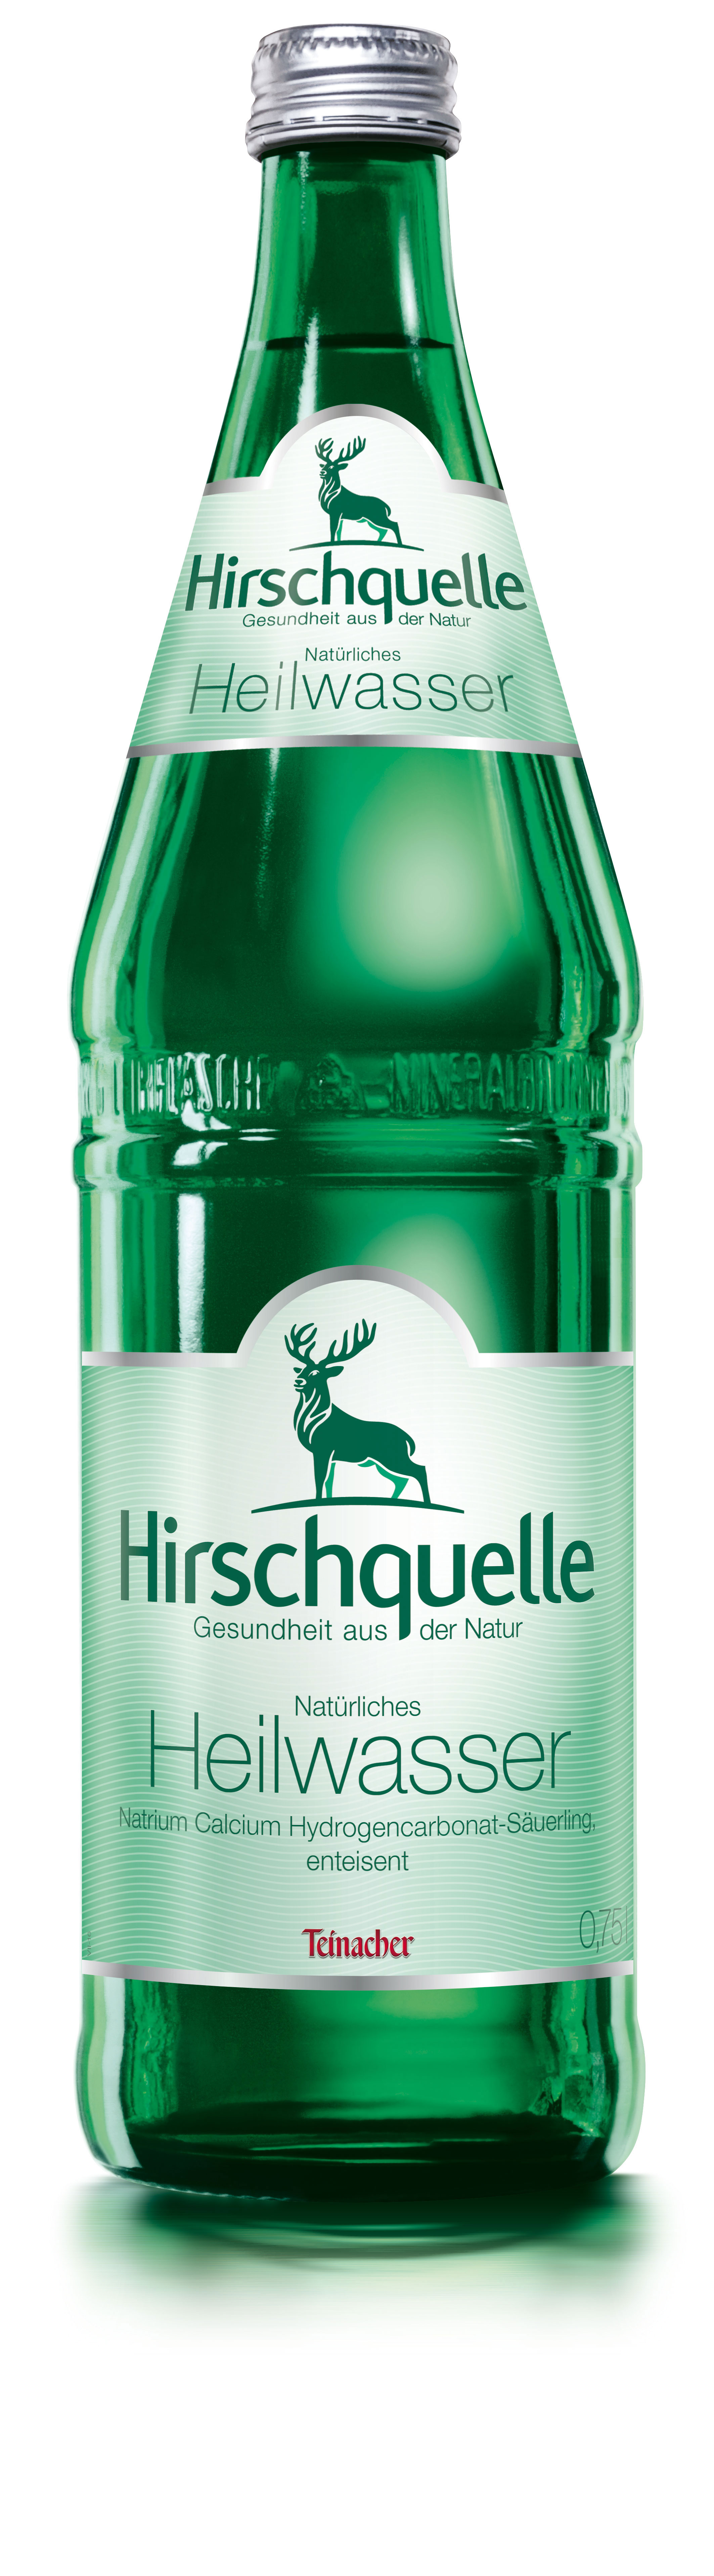 Hirschquelle Heilwasser 12x0,75 l